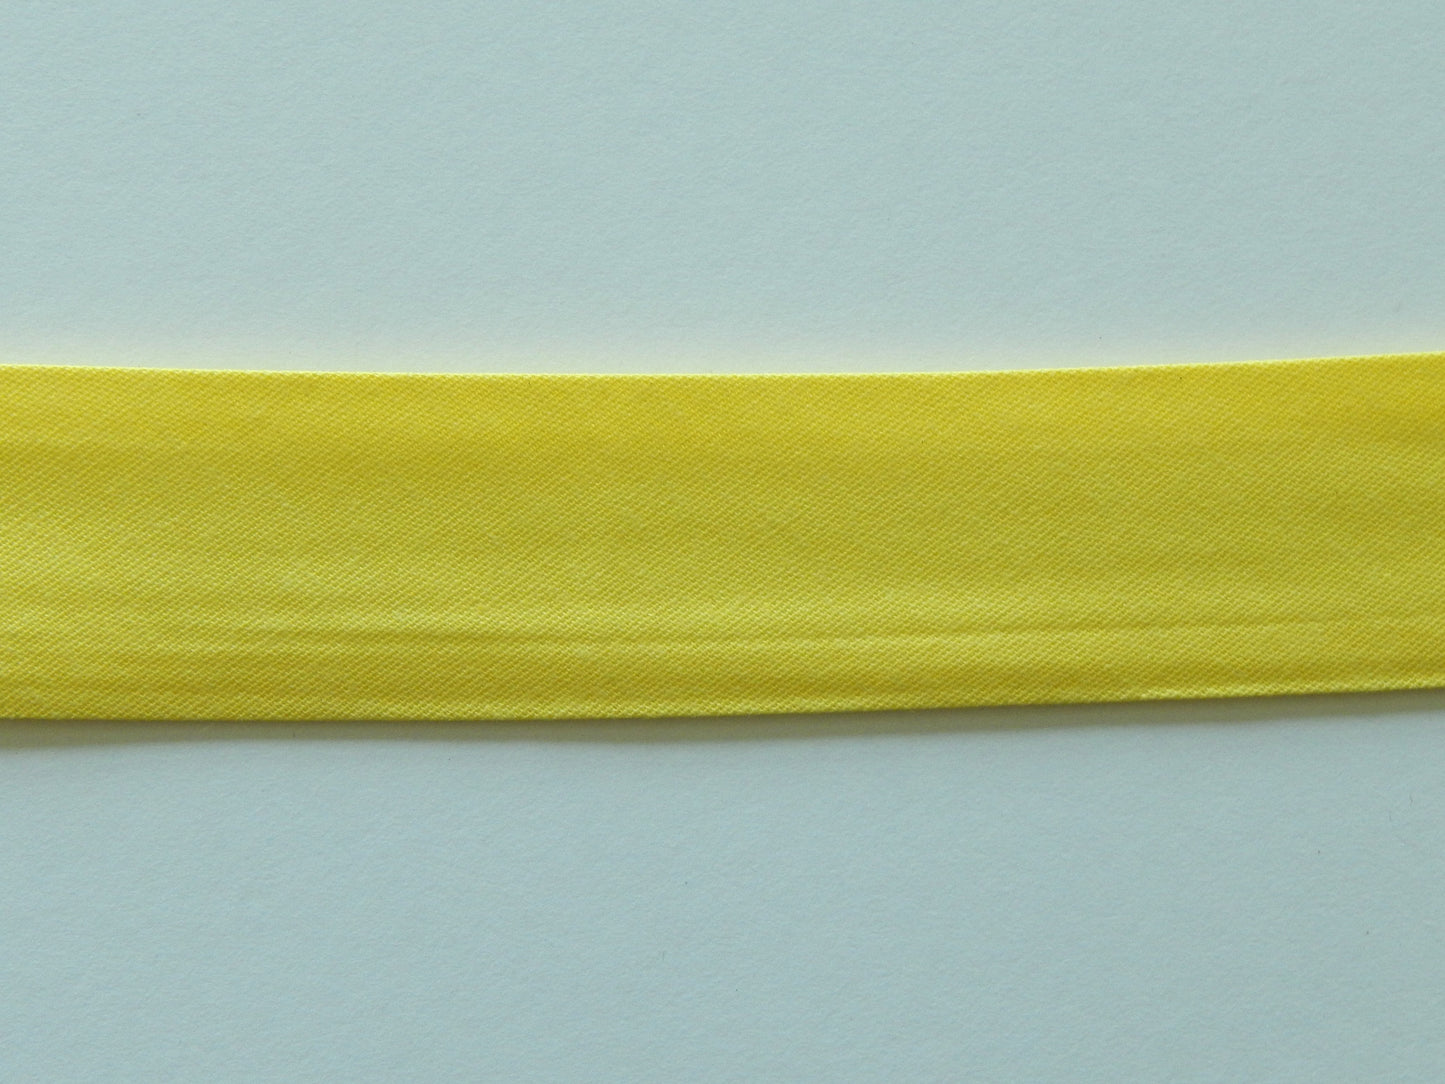 yellow seam tape